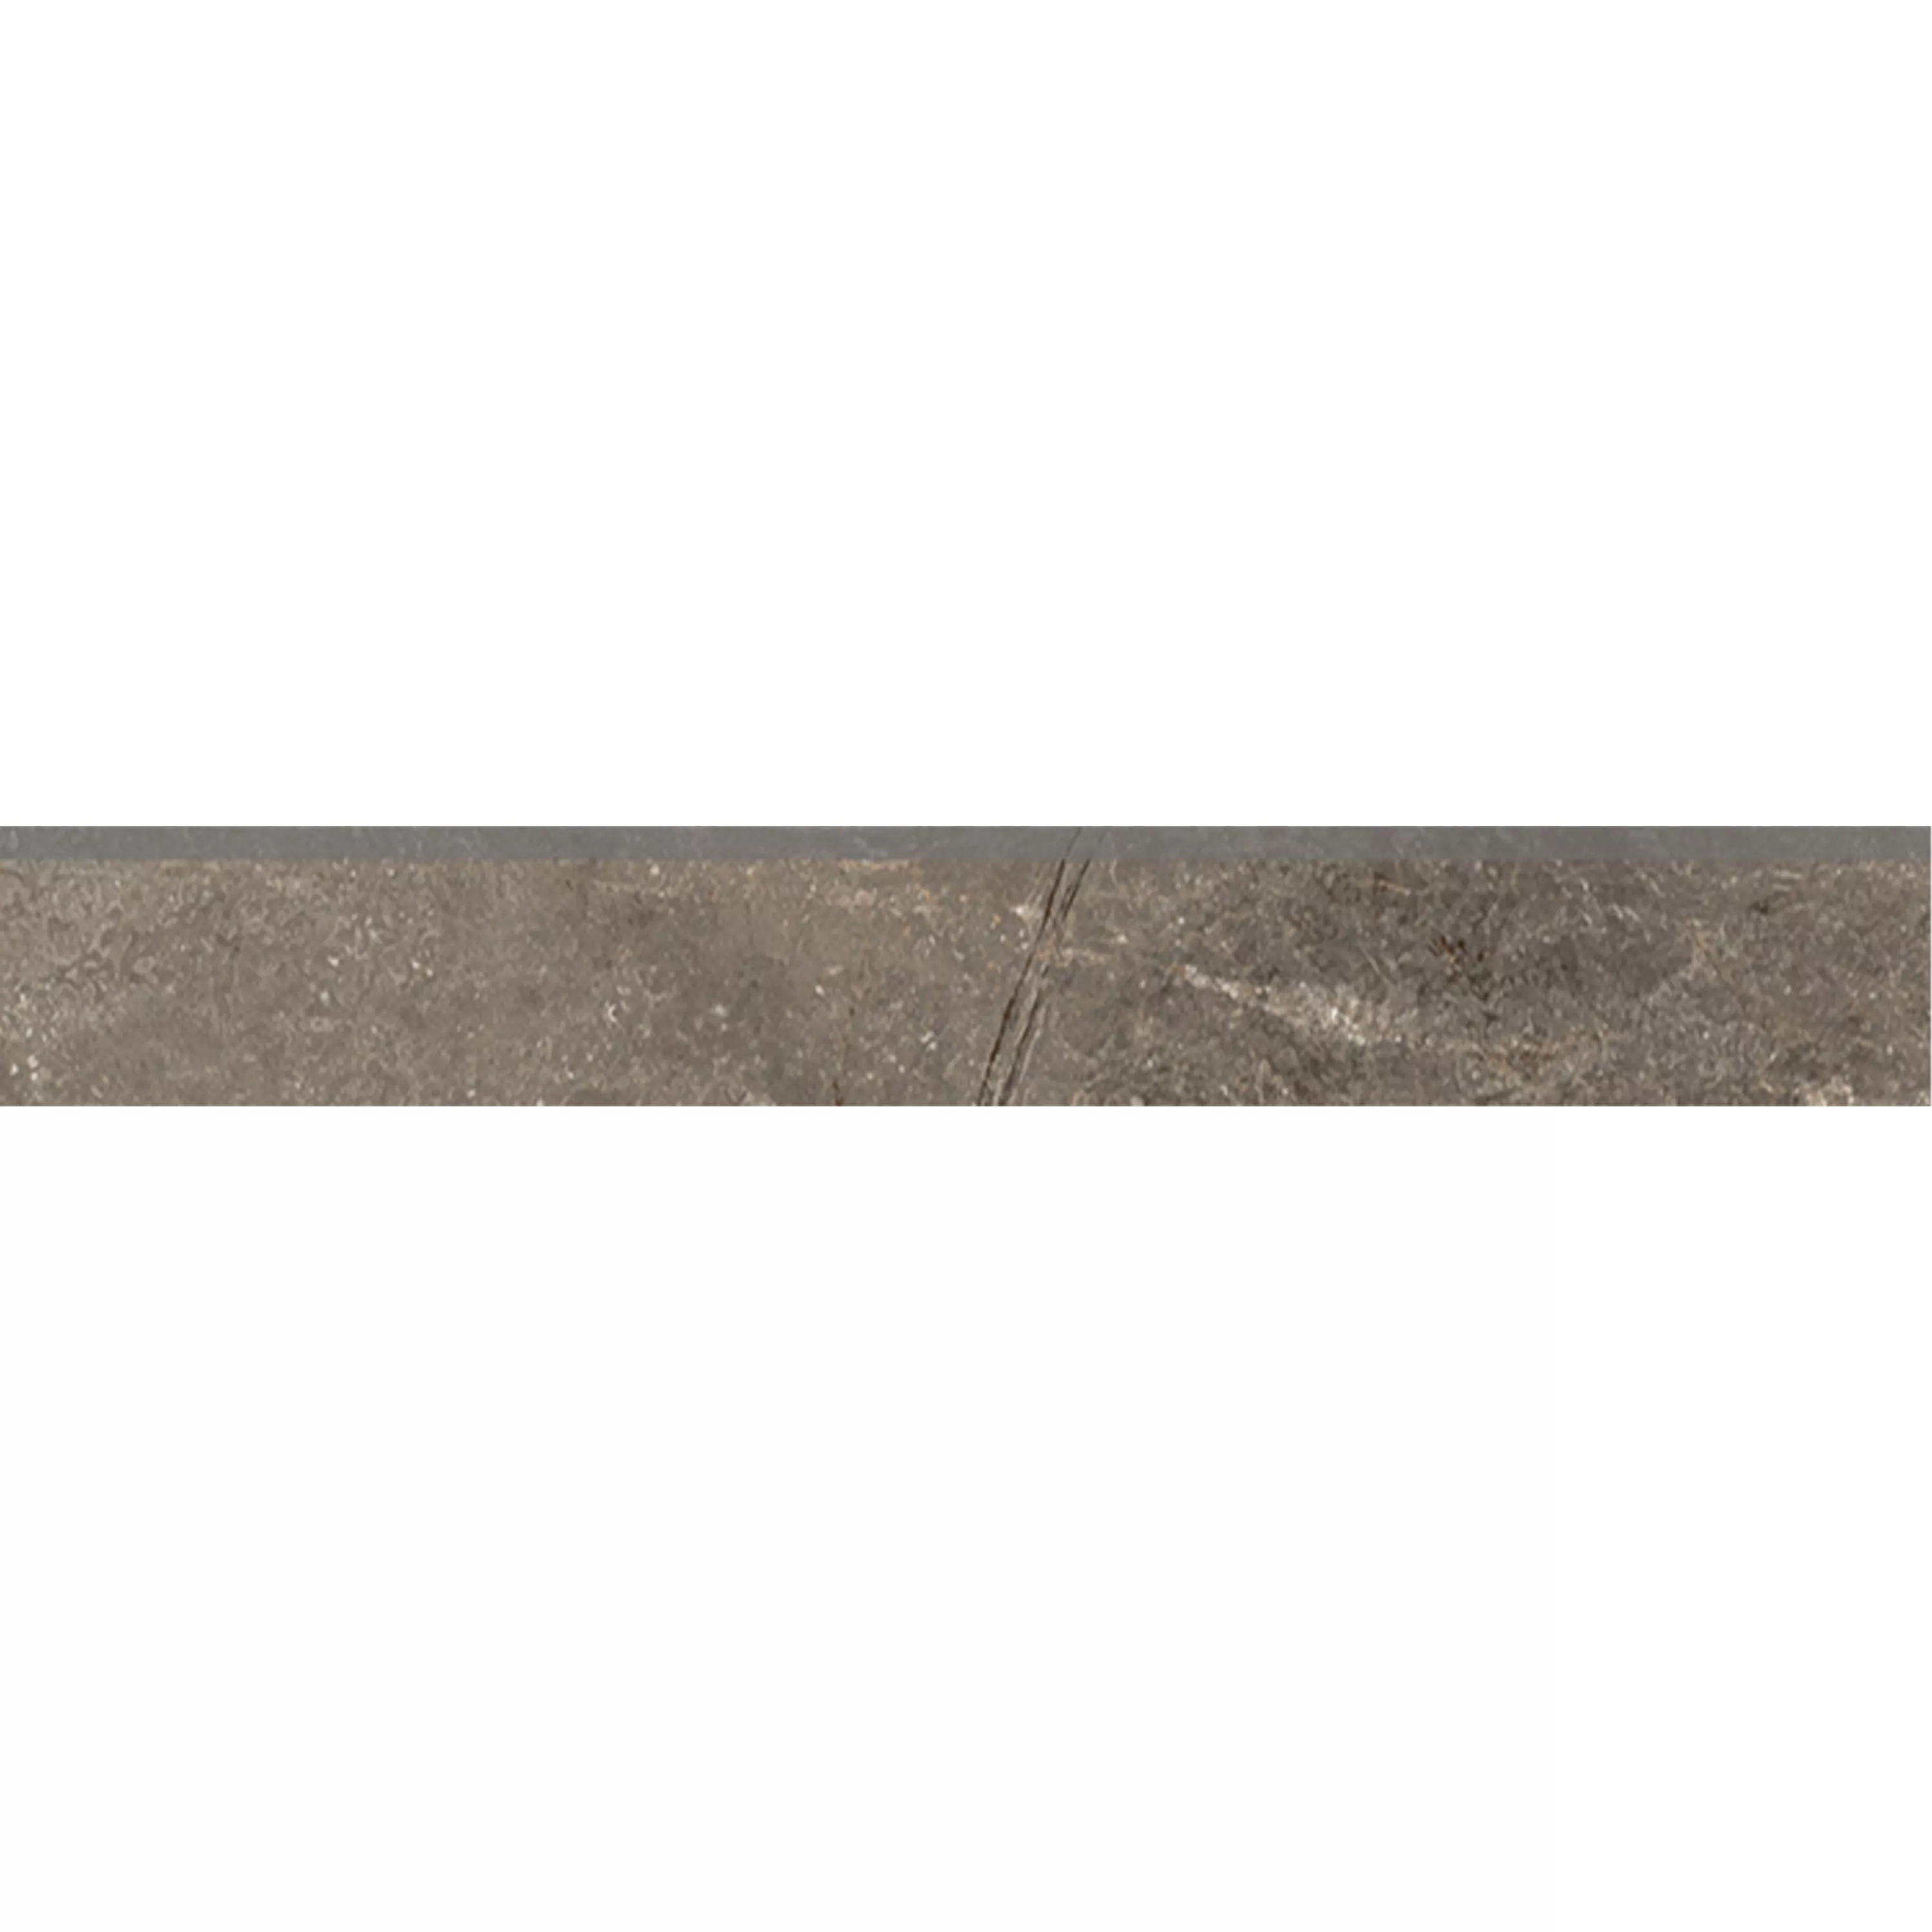 Πλακάκια Δαπέδου Pangea Μαρμάρινη Όψη Παγωμένος Mokka Bάση 7x60cm